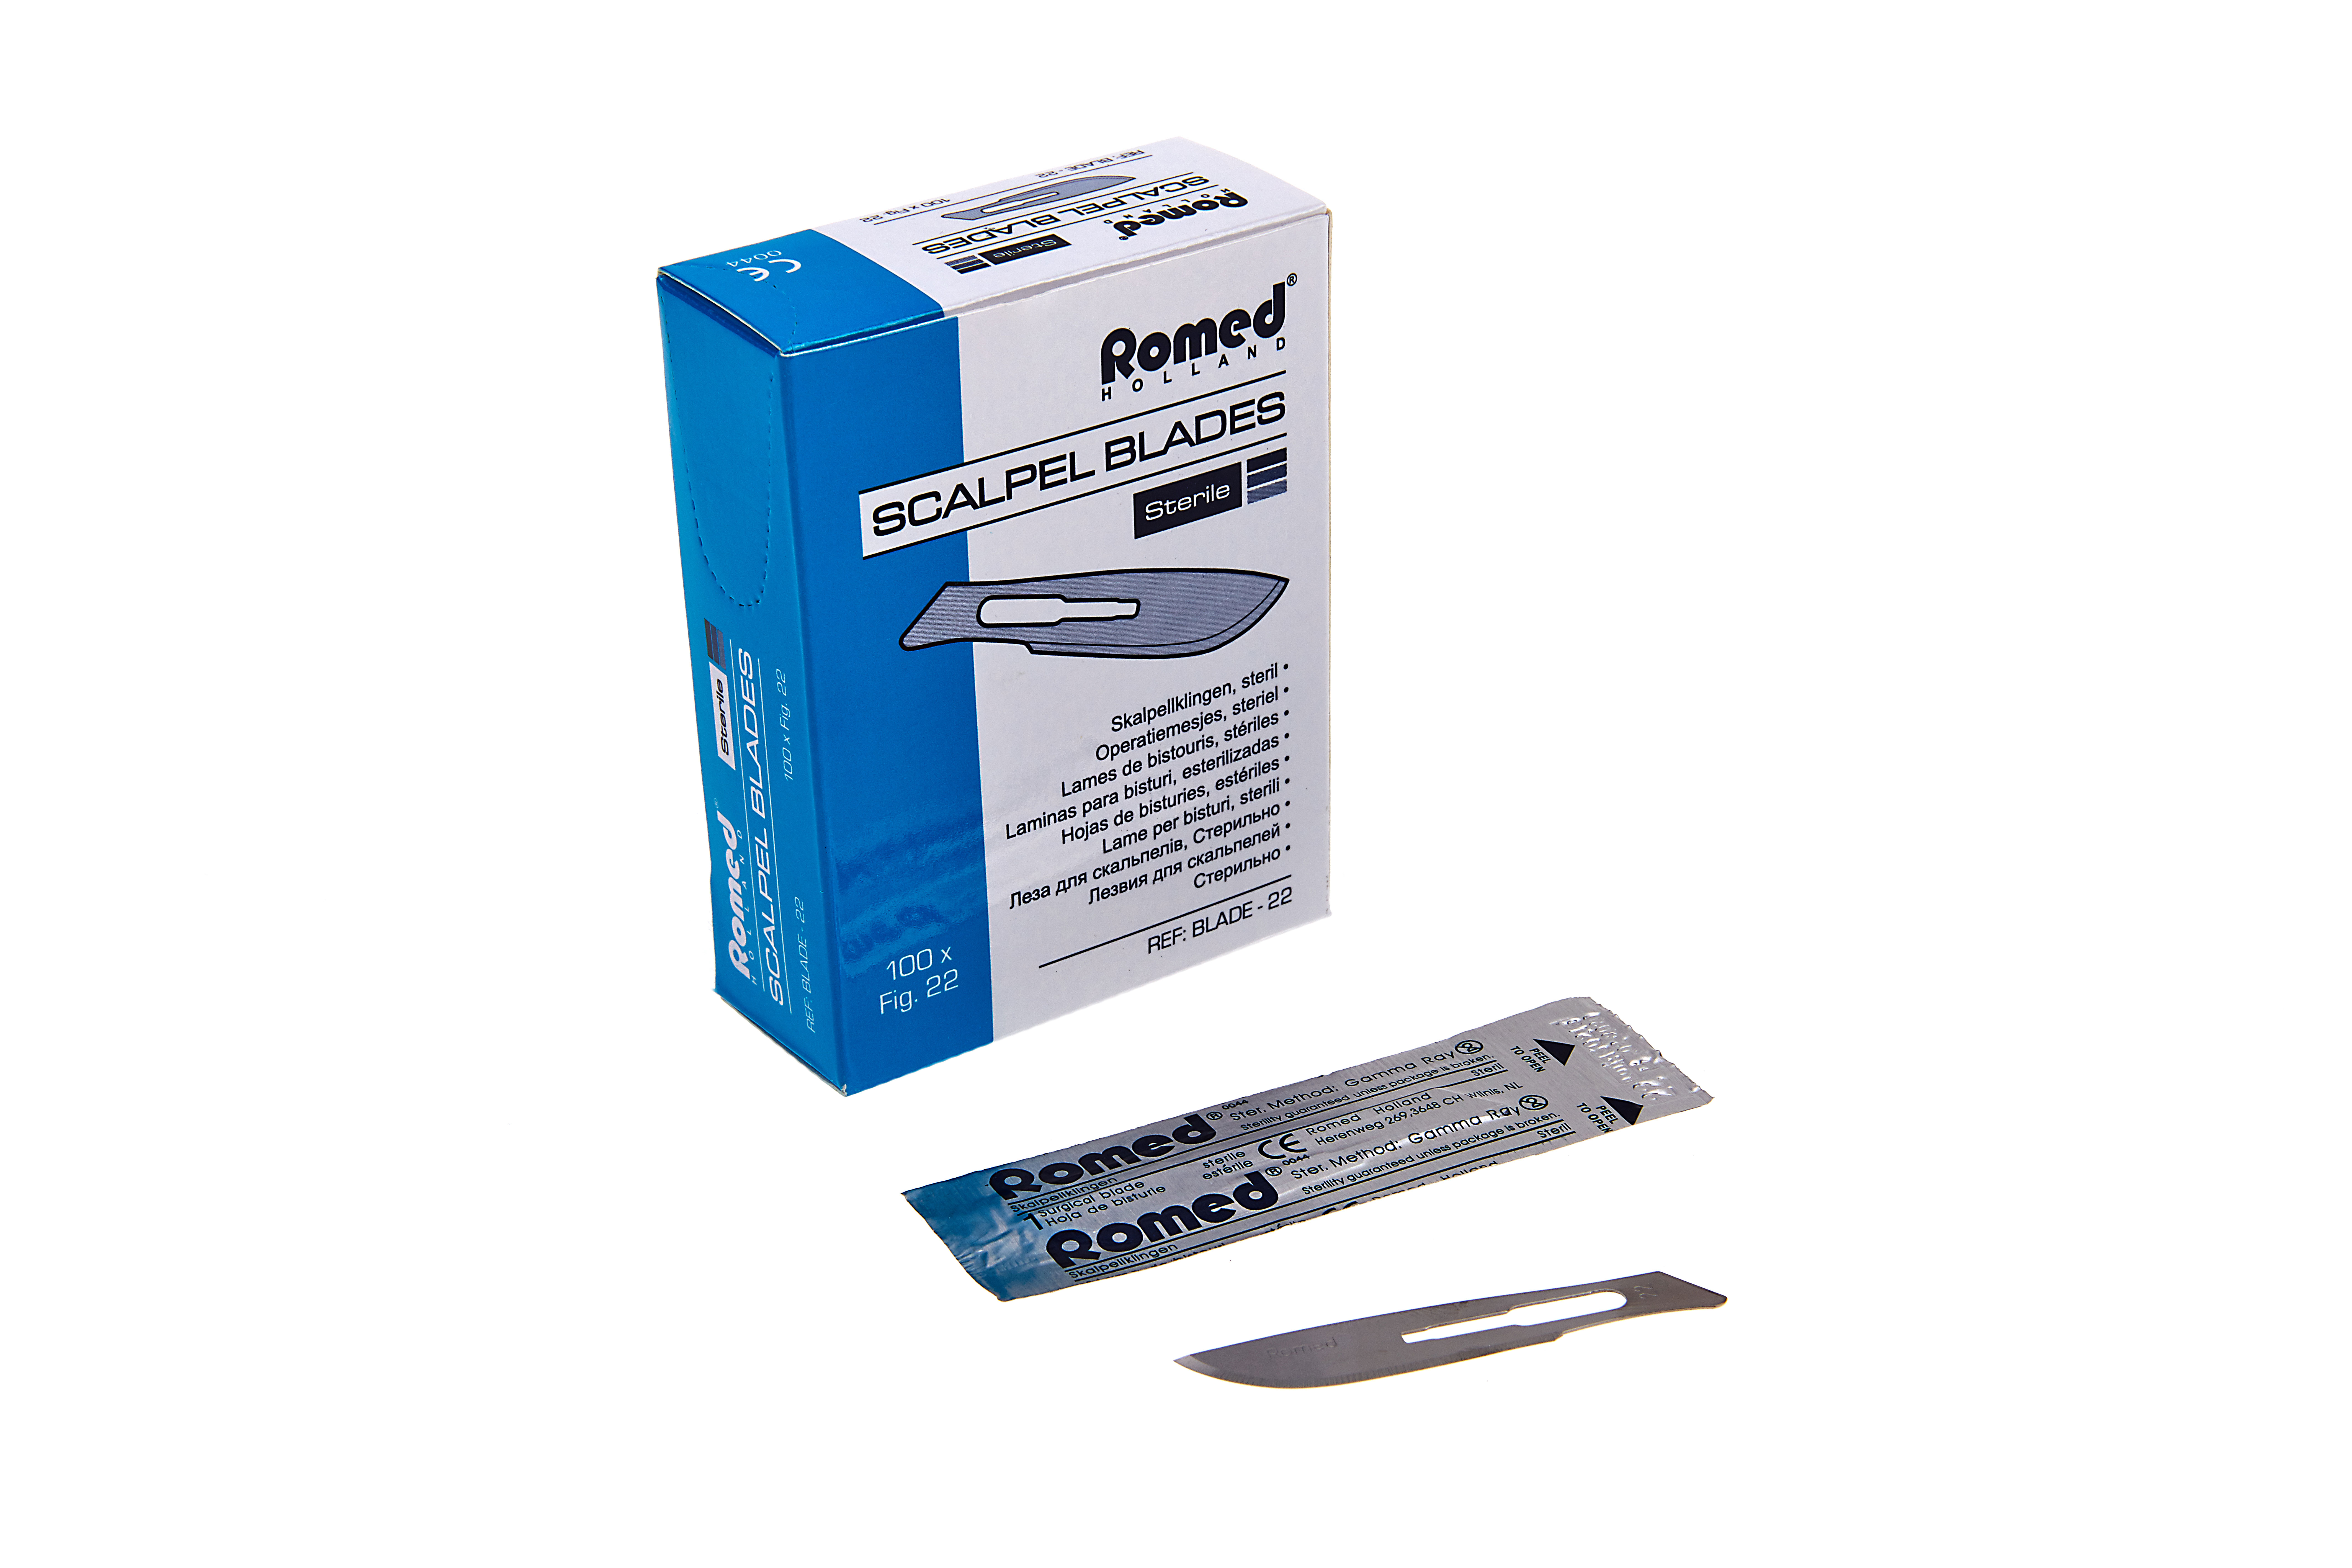 BLADE10 Romed scalpelmesjes (blades), steriel per stuk, 100 stuks in een doosje, 50 x 100 stuks = 5.000 stuks in een karton.